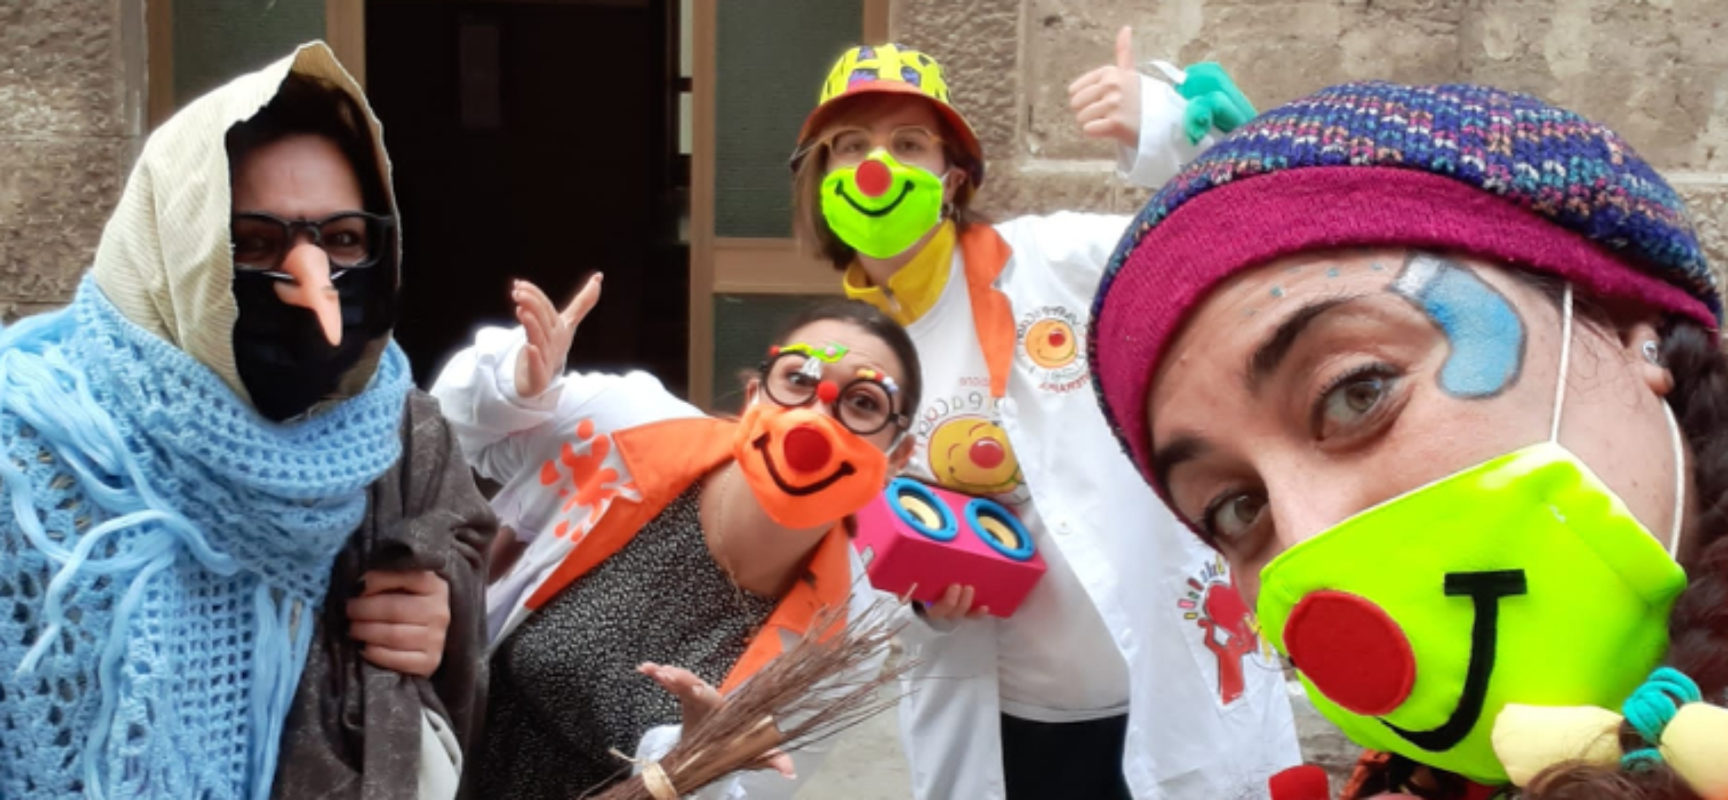 L’Associazione “Vivere a colori” con la sua Befana e i suoi clown in città / FOTO